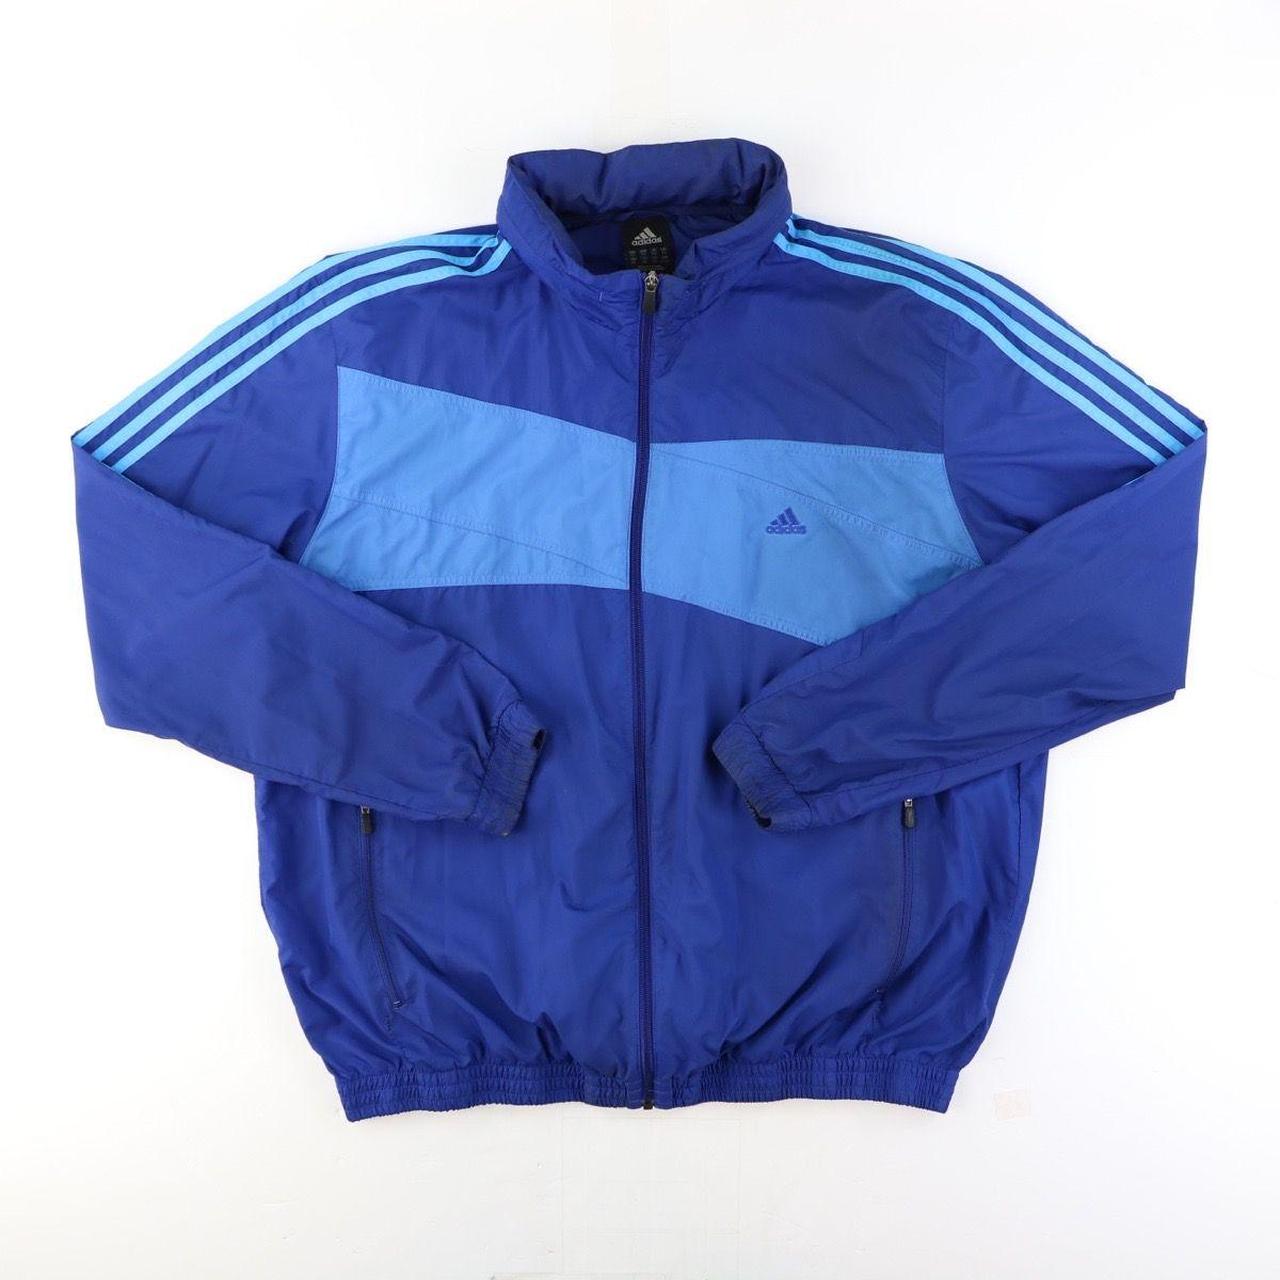 Adidas Zip Up Jacket Vintage Wind resistant... - Depop